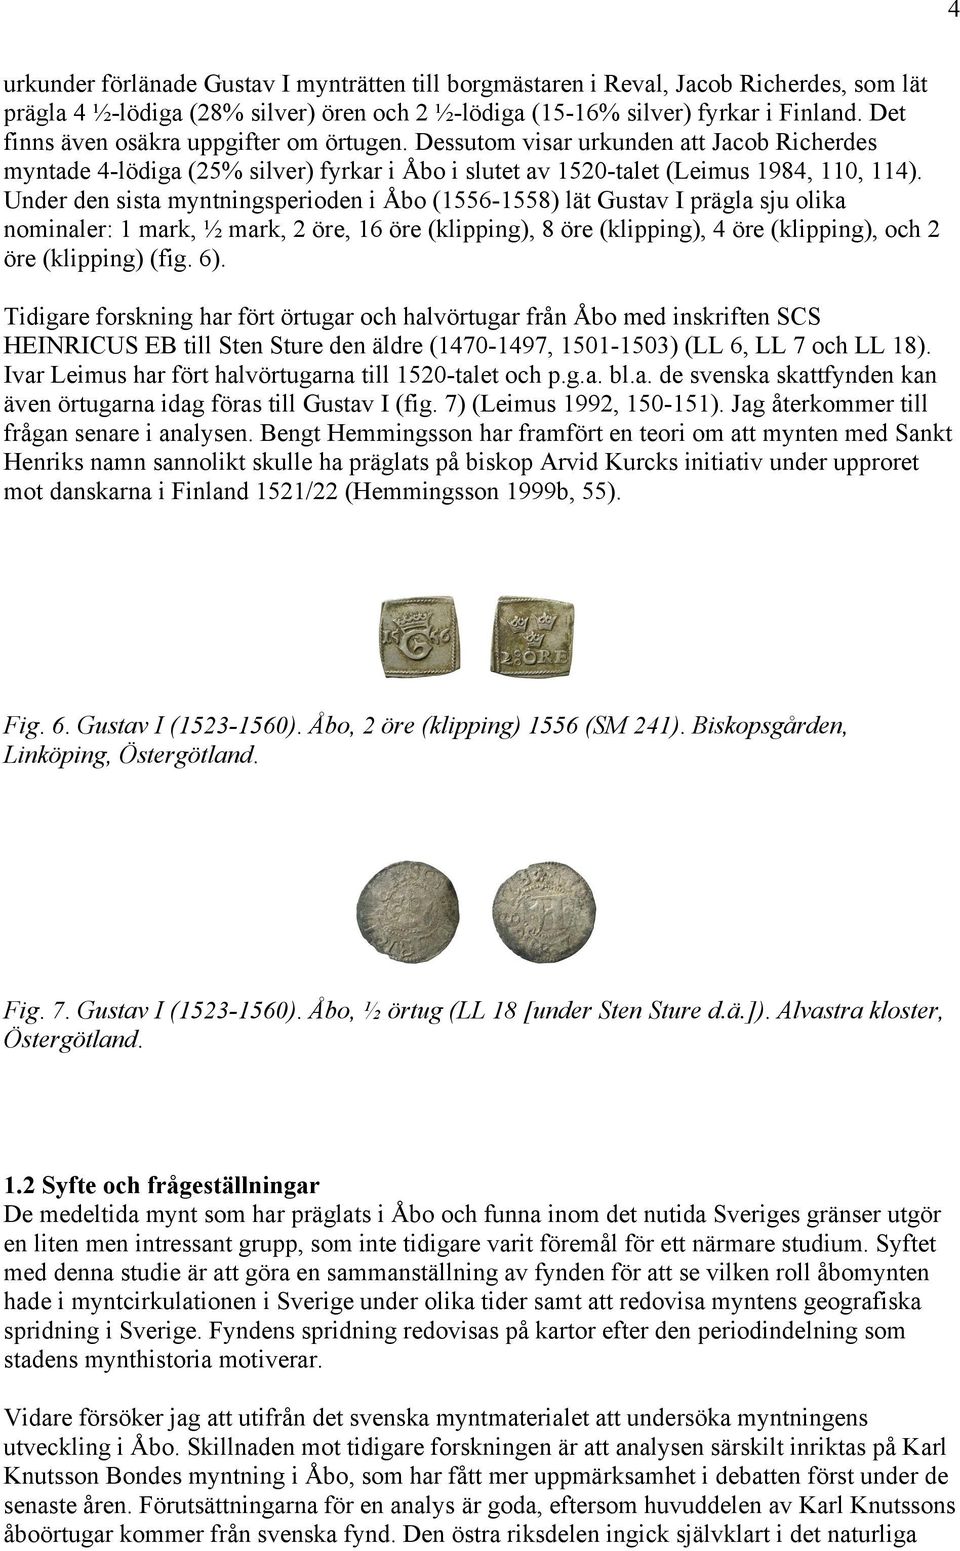 Under den sista myntningsperioden i Åbo (556558) lät Gustav I prägla sju olika nominaler: mark, ½ mark, 2 öre, 6 öre (klipping), 8 öre (klipping), 4 öre (klipping), och 2 öre (klipping) (fig. 6).